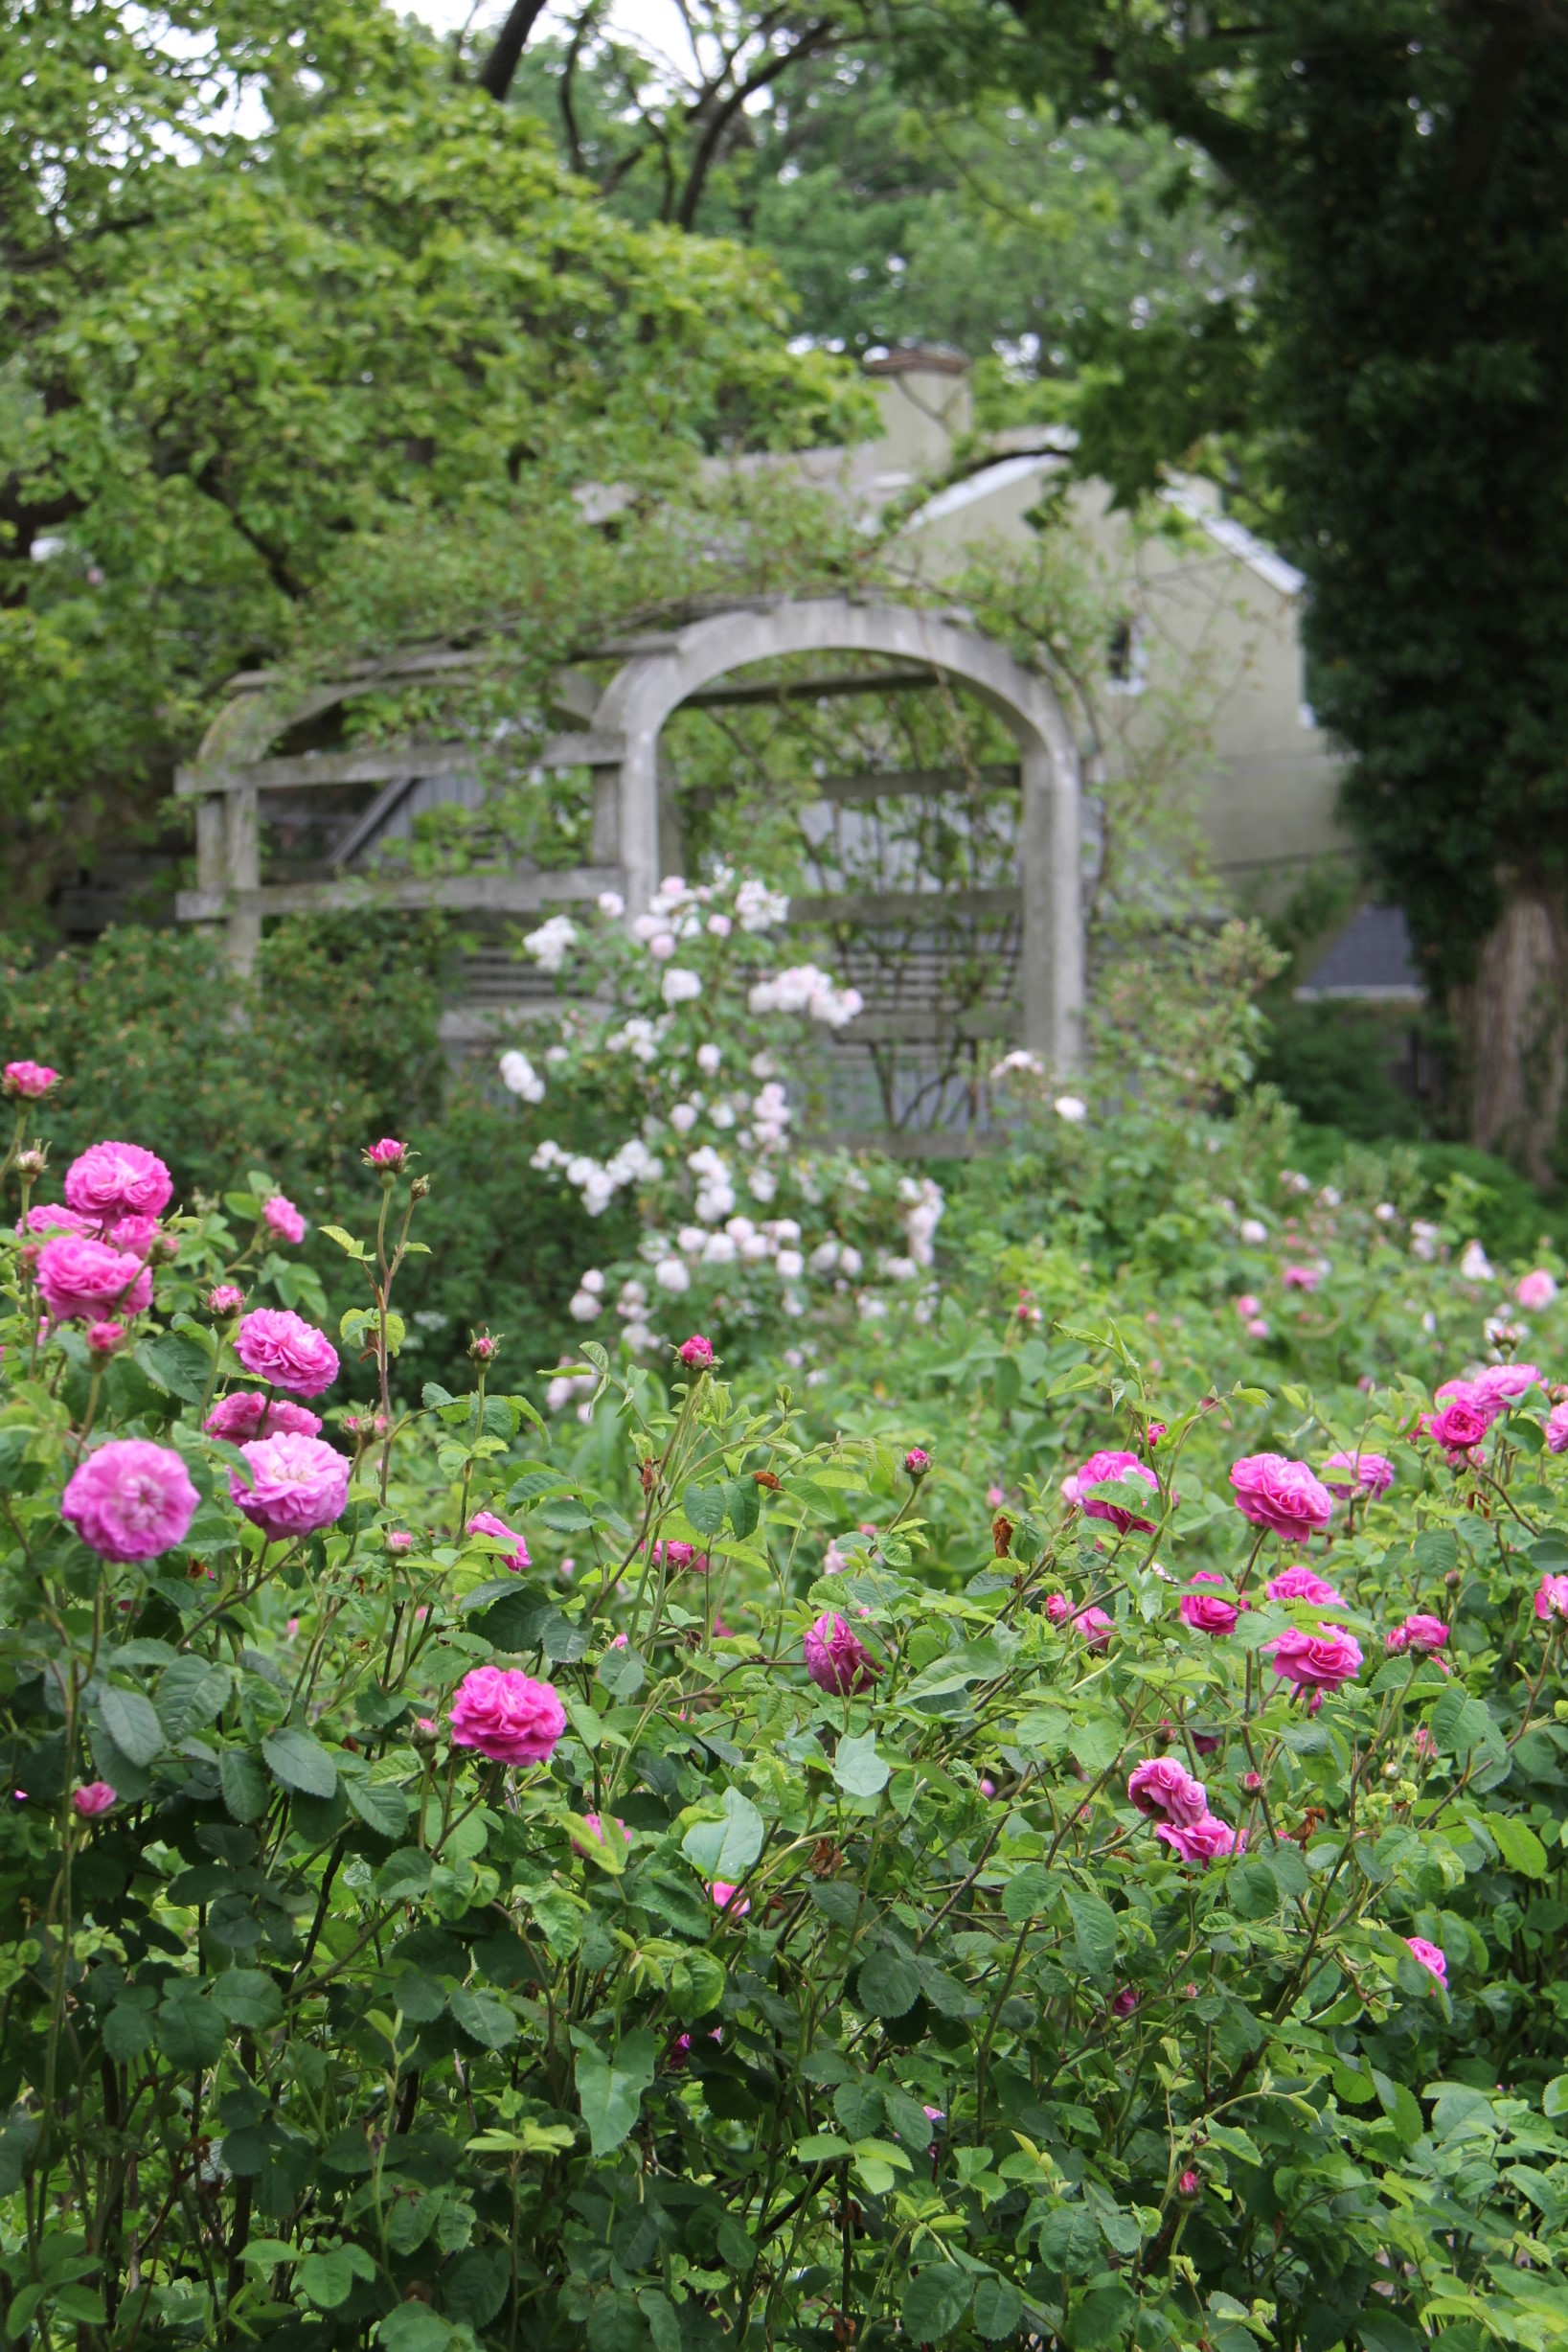 Wyck Rose Garden